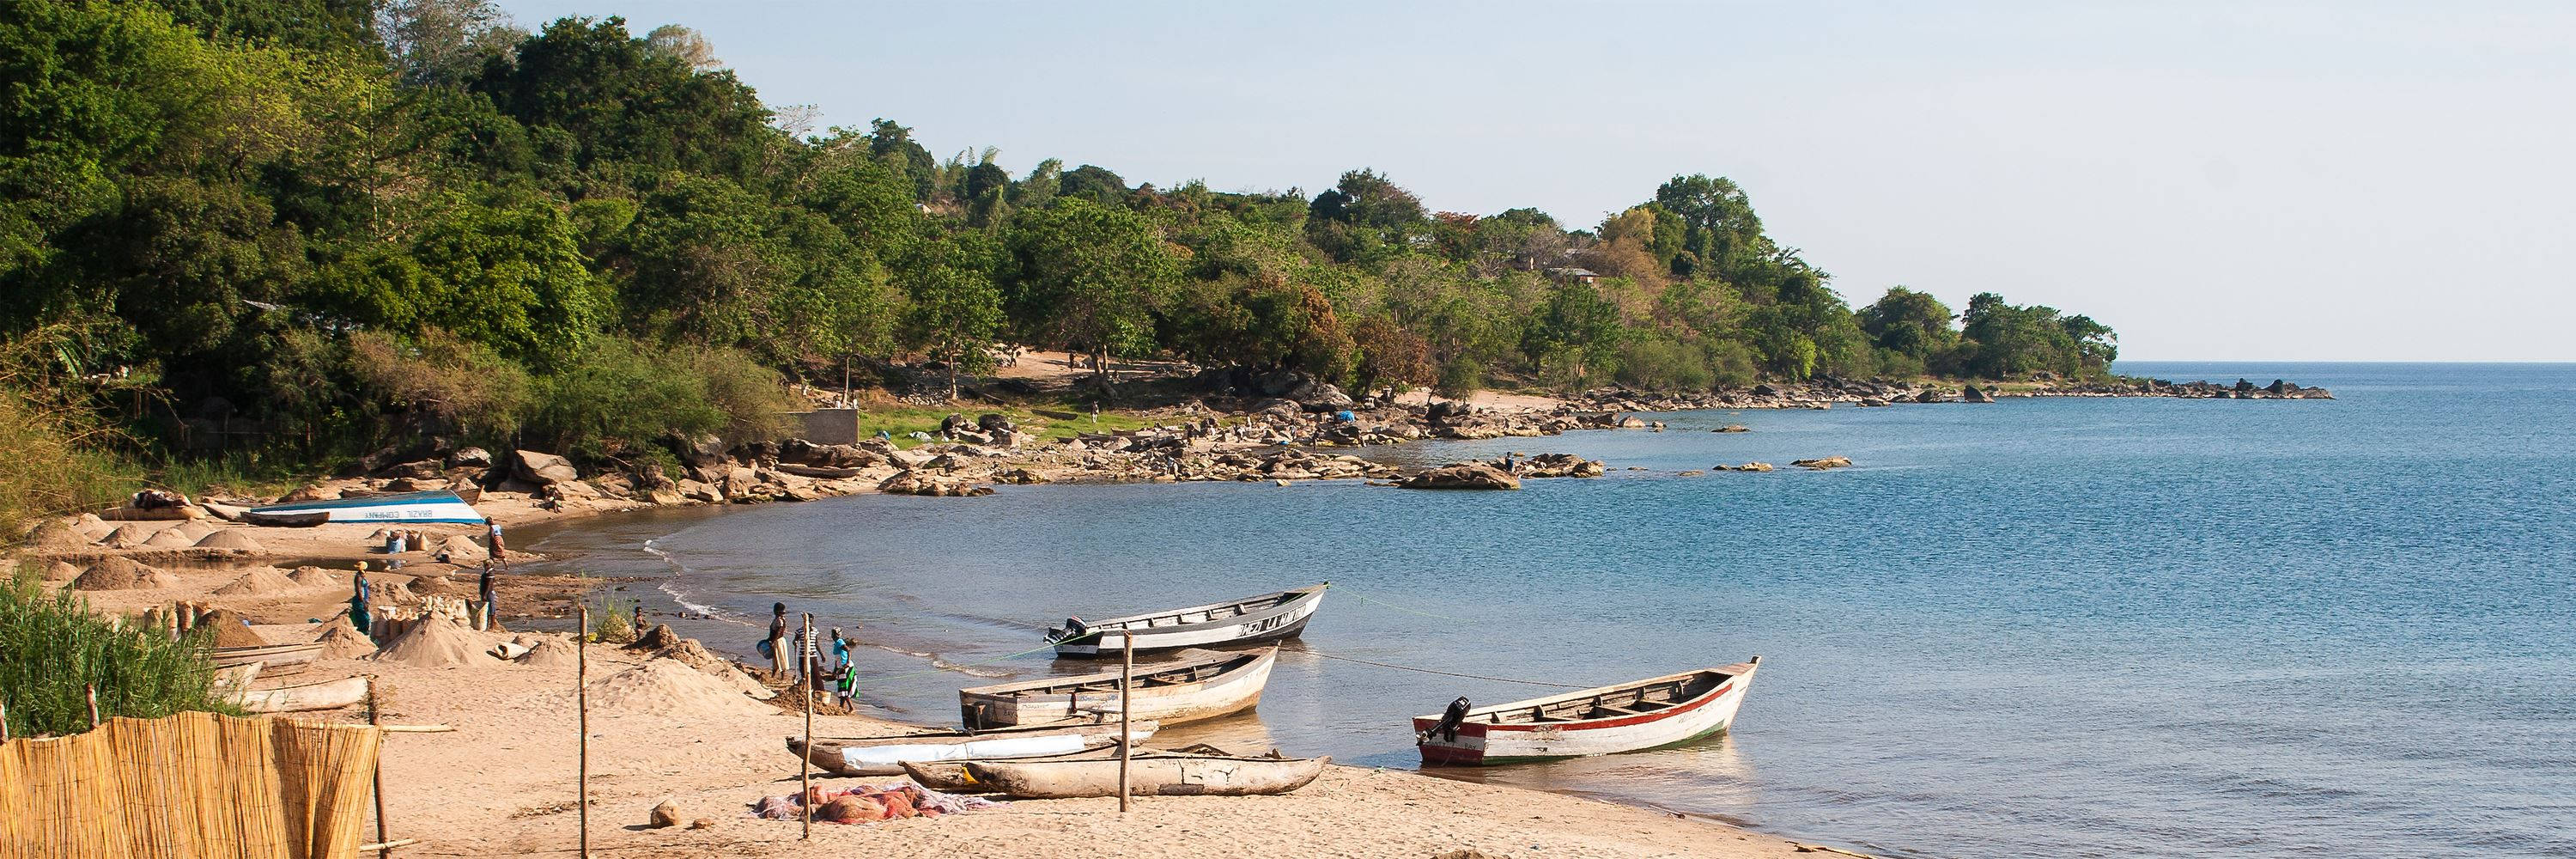 Malawiparkierte Boote Strand Wallpaper